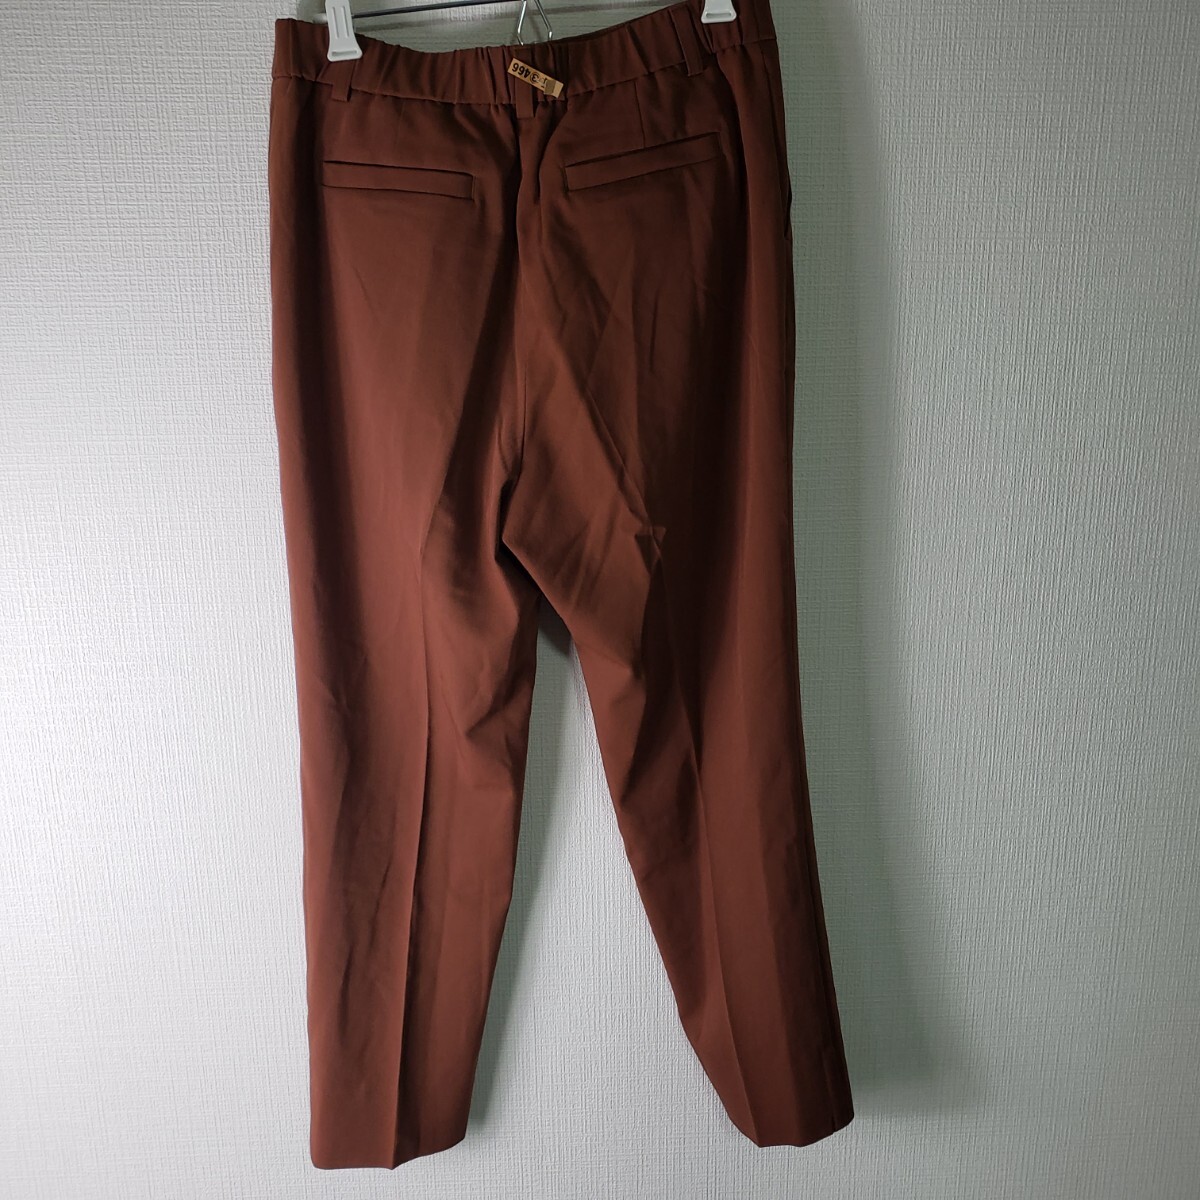 Y9 KUMIKYOKU Kumikyoku брюки размер 3 массовая закупка . выгода 